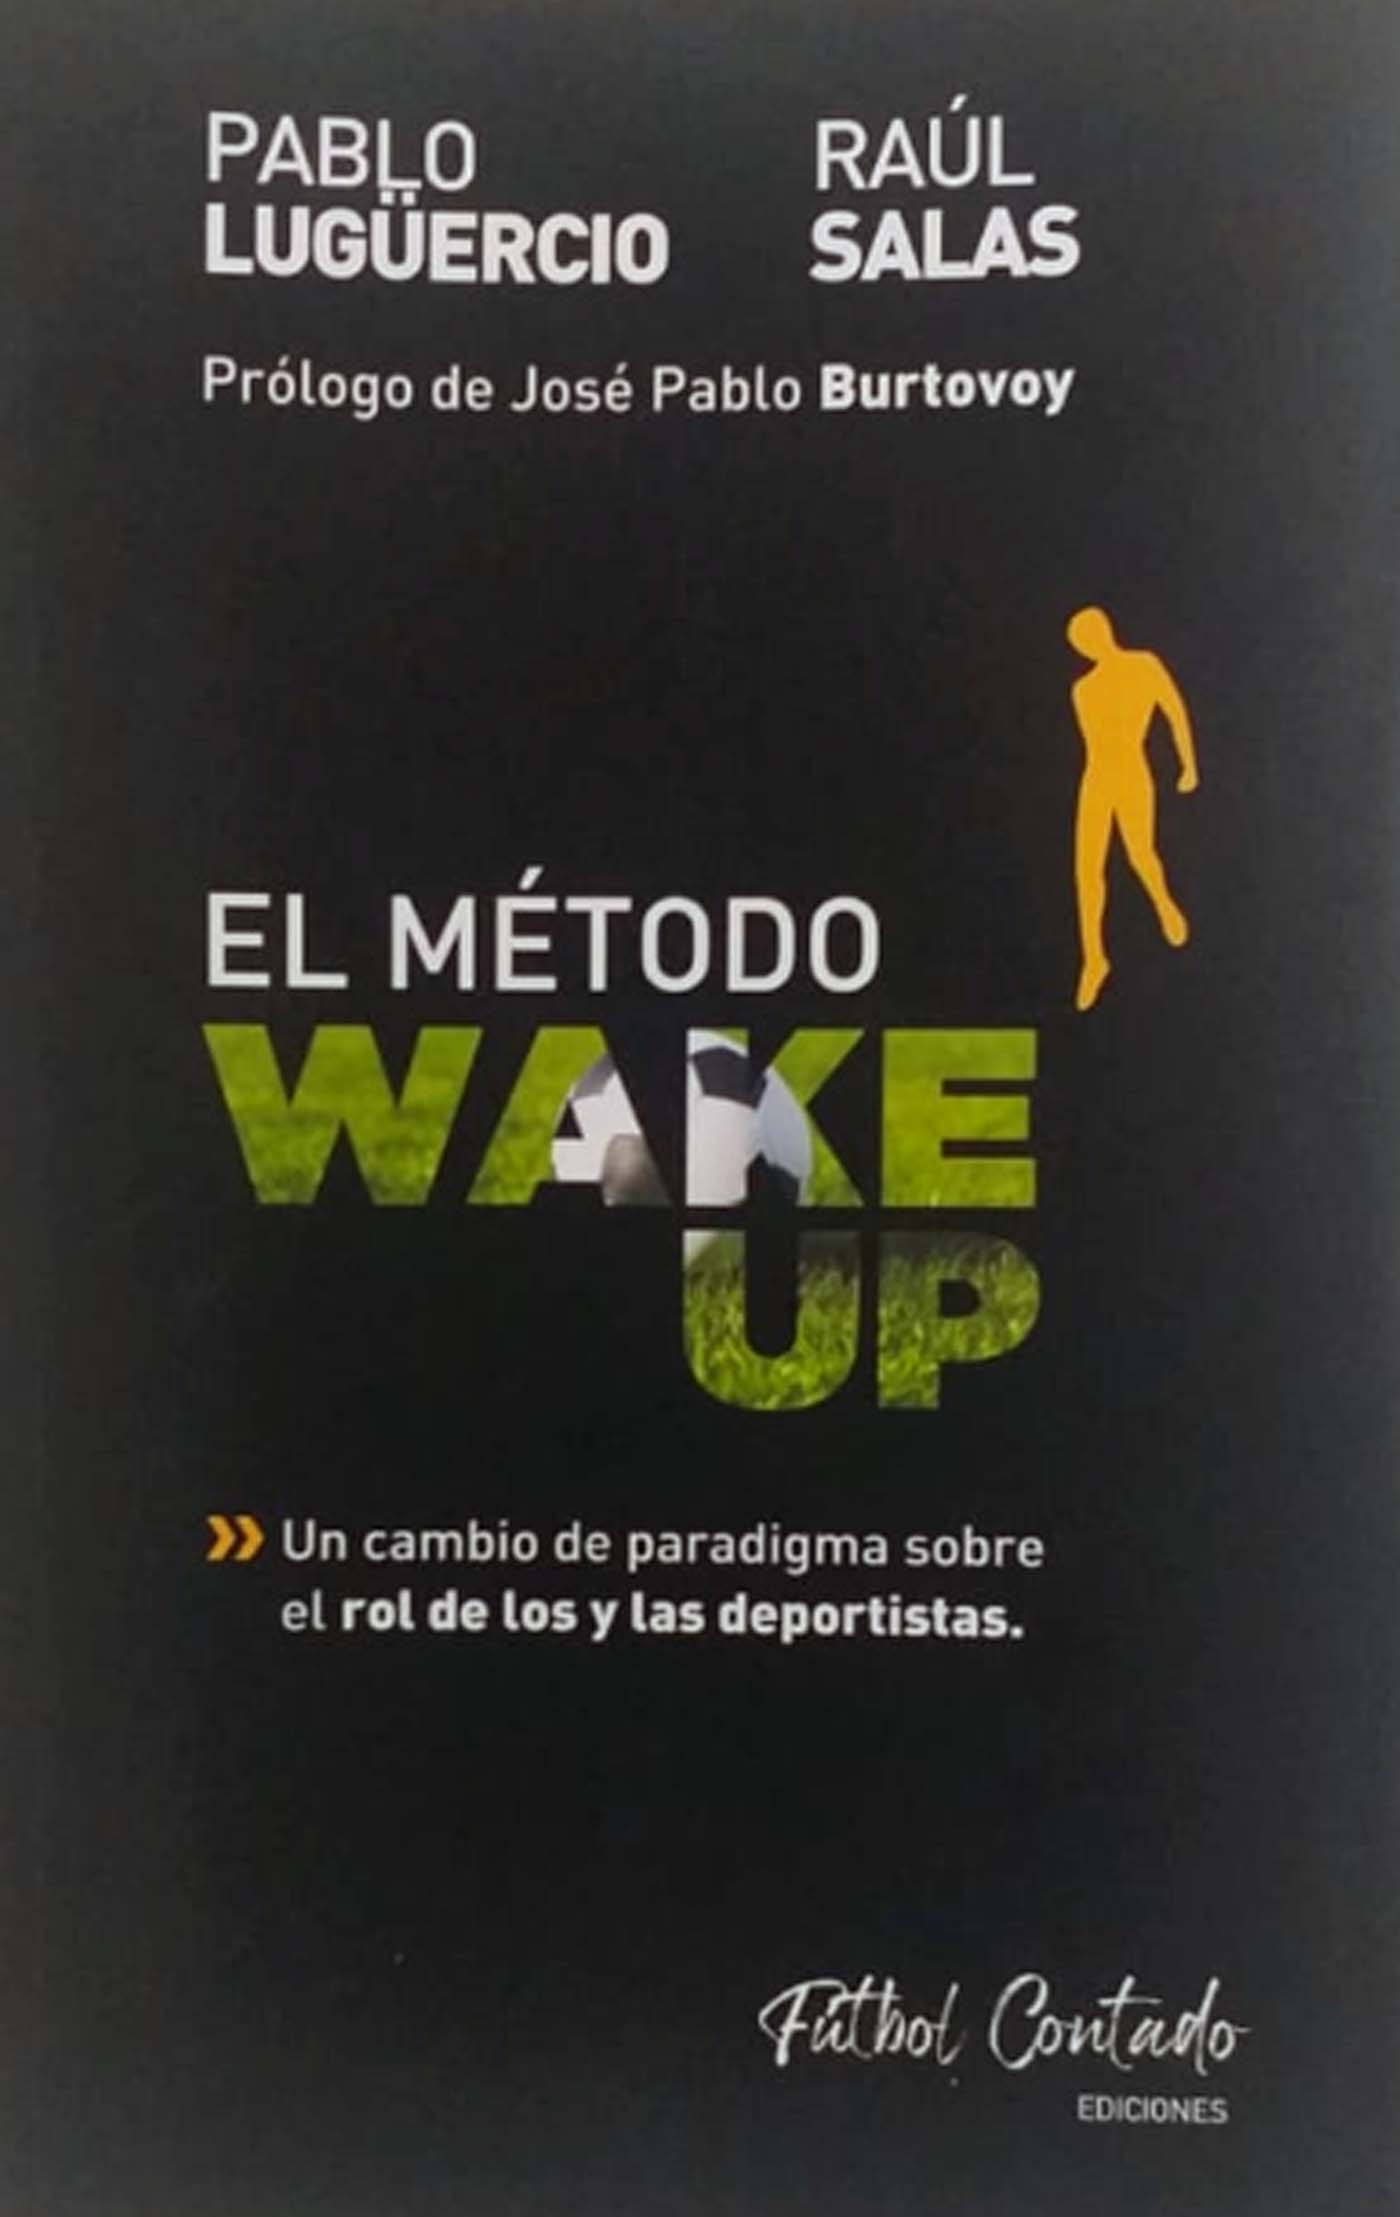 El método Wake Up Libro Pablo Luguercio